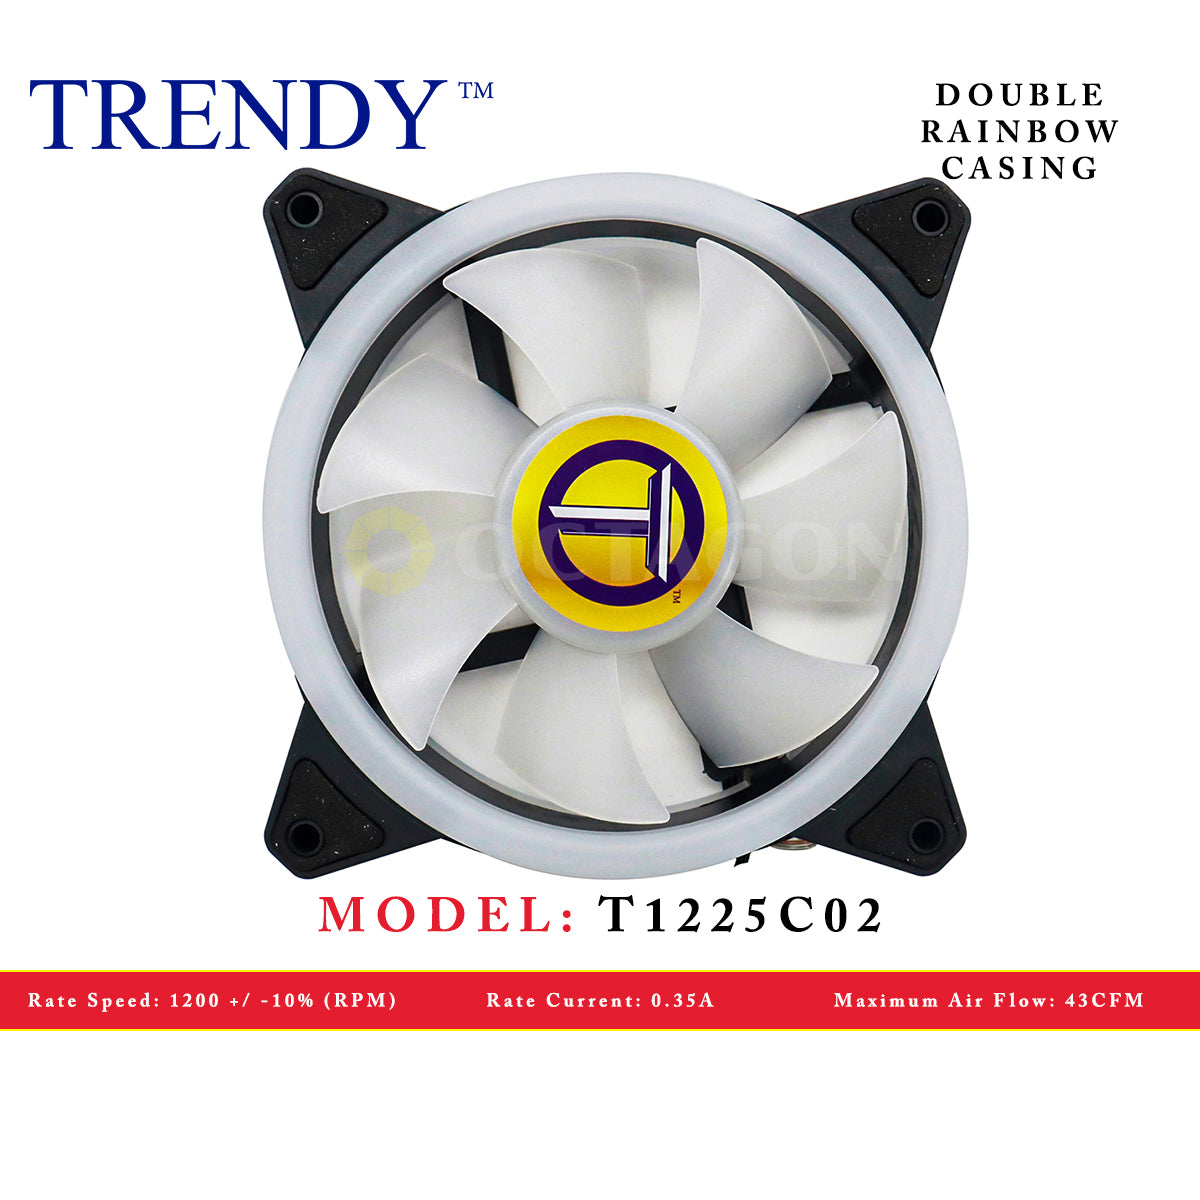 TRENDY T1225C02 DOUBLE RAINBOW CASING